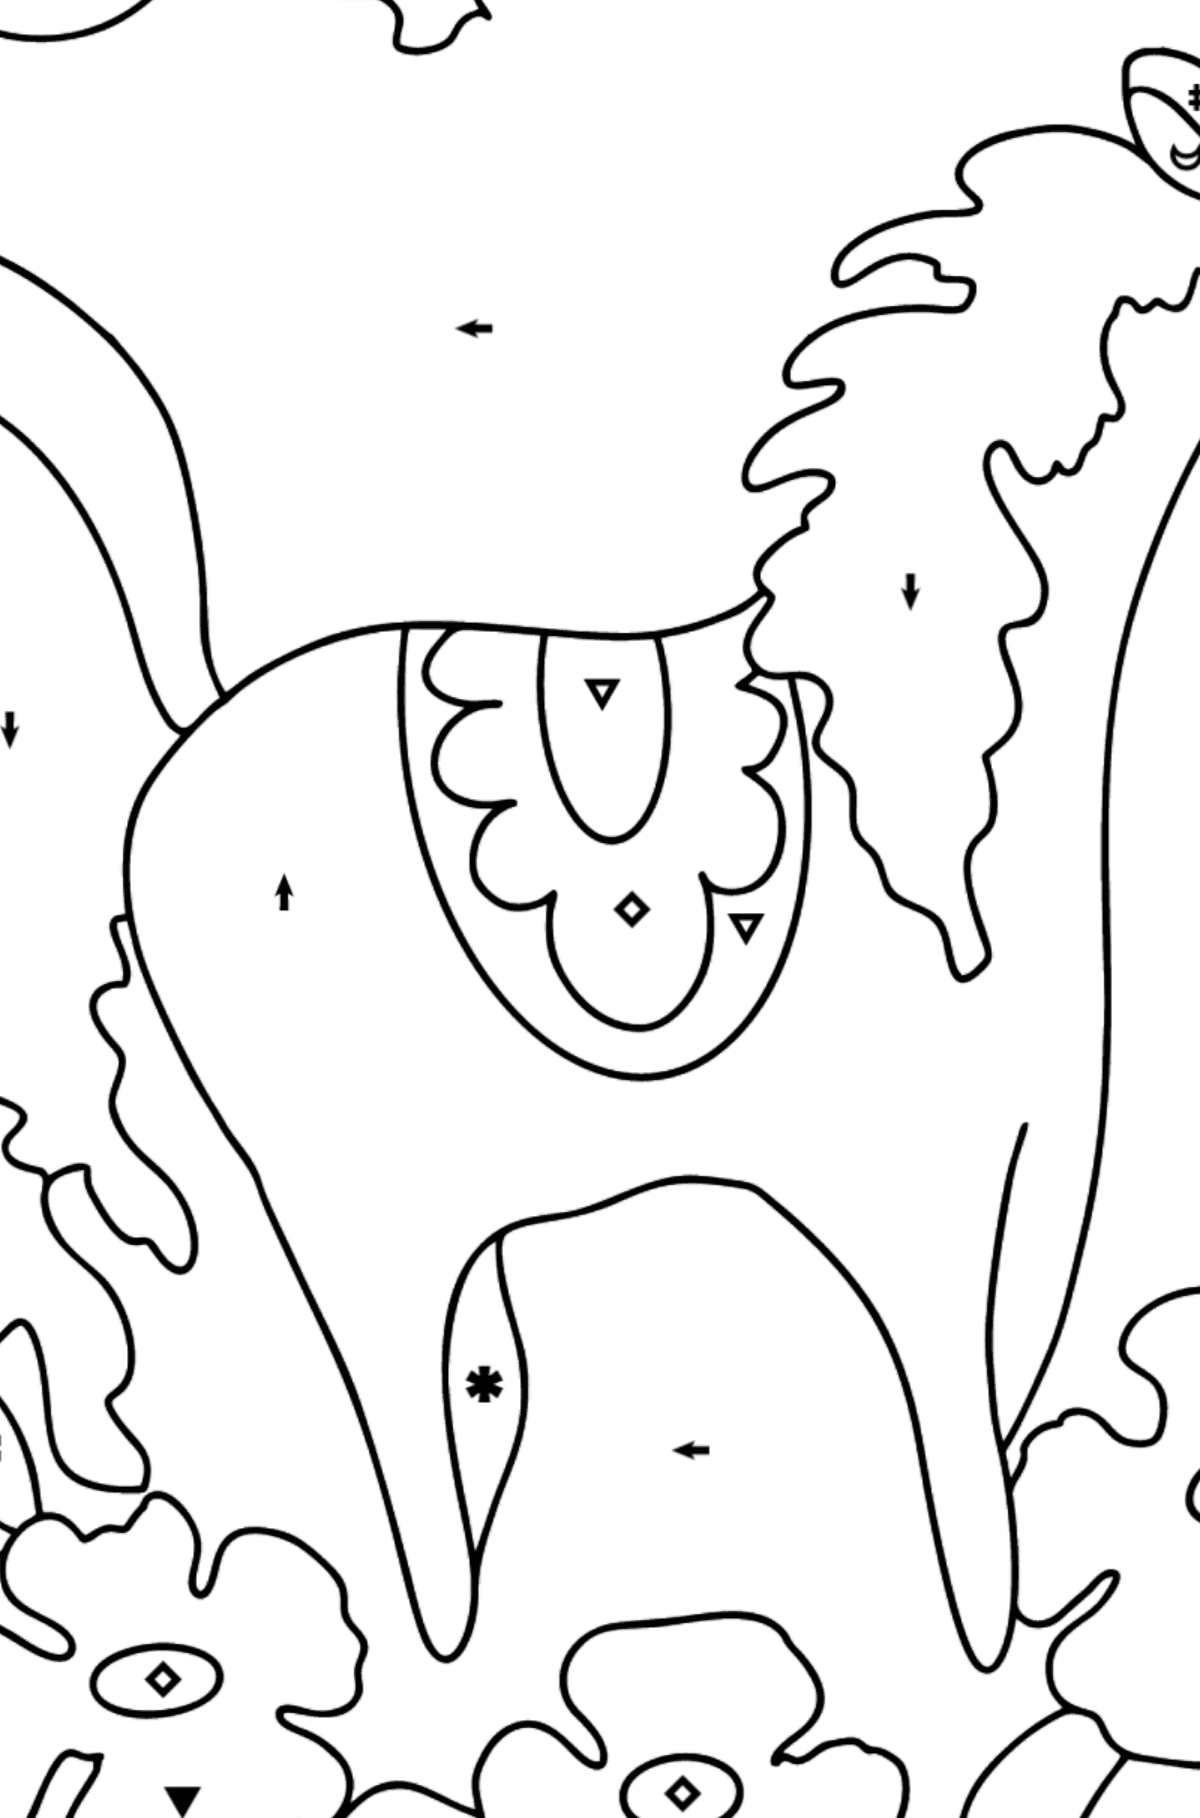 Розмальовка кінь для дітей віком від 5 років - Розмальовки за символами для дітей